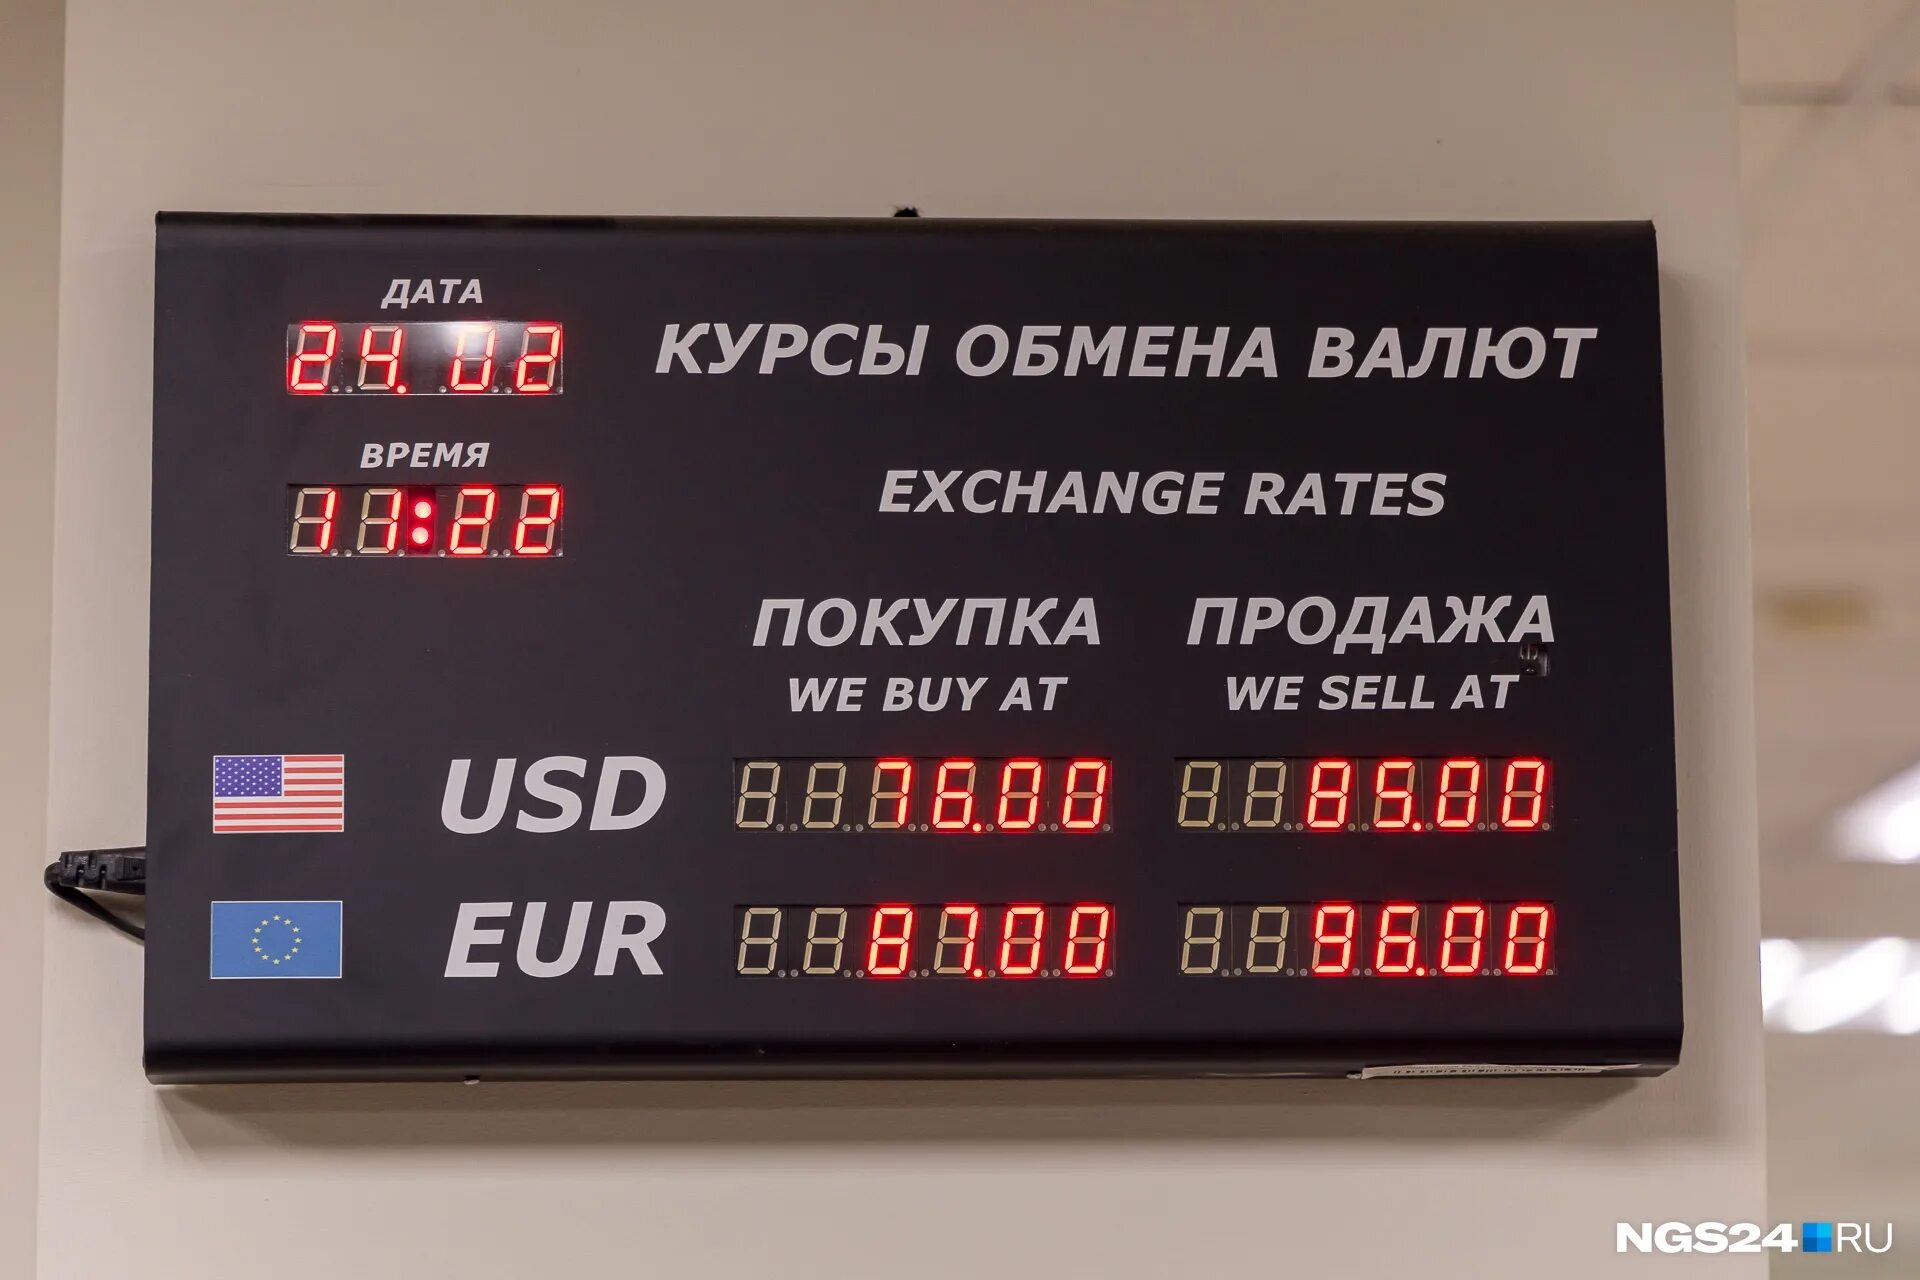 Обмен валюты вологда. Обменник валют. Курсы обмена валют. Обменные курсы валют. Размен валюты.